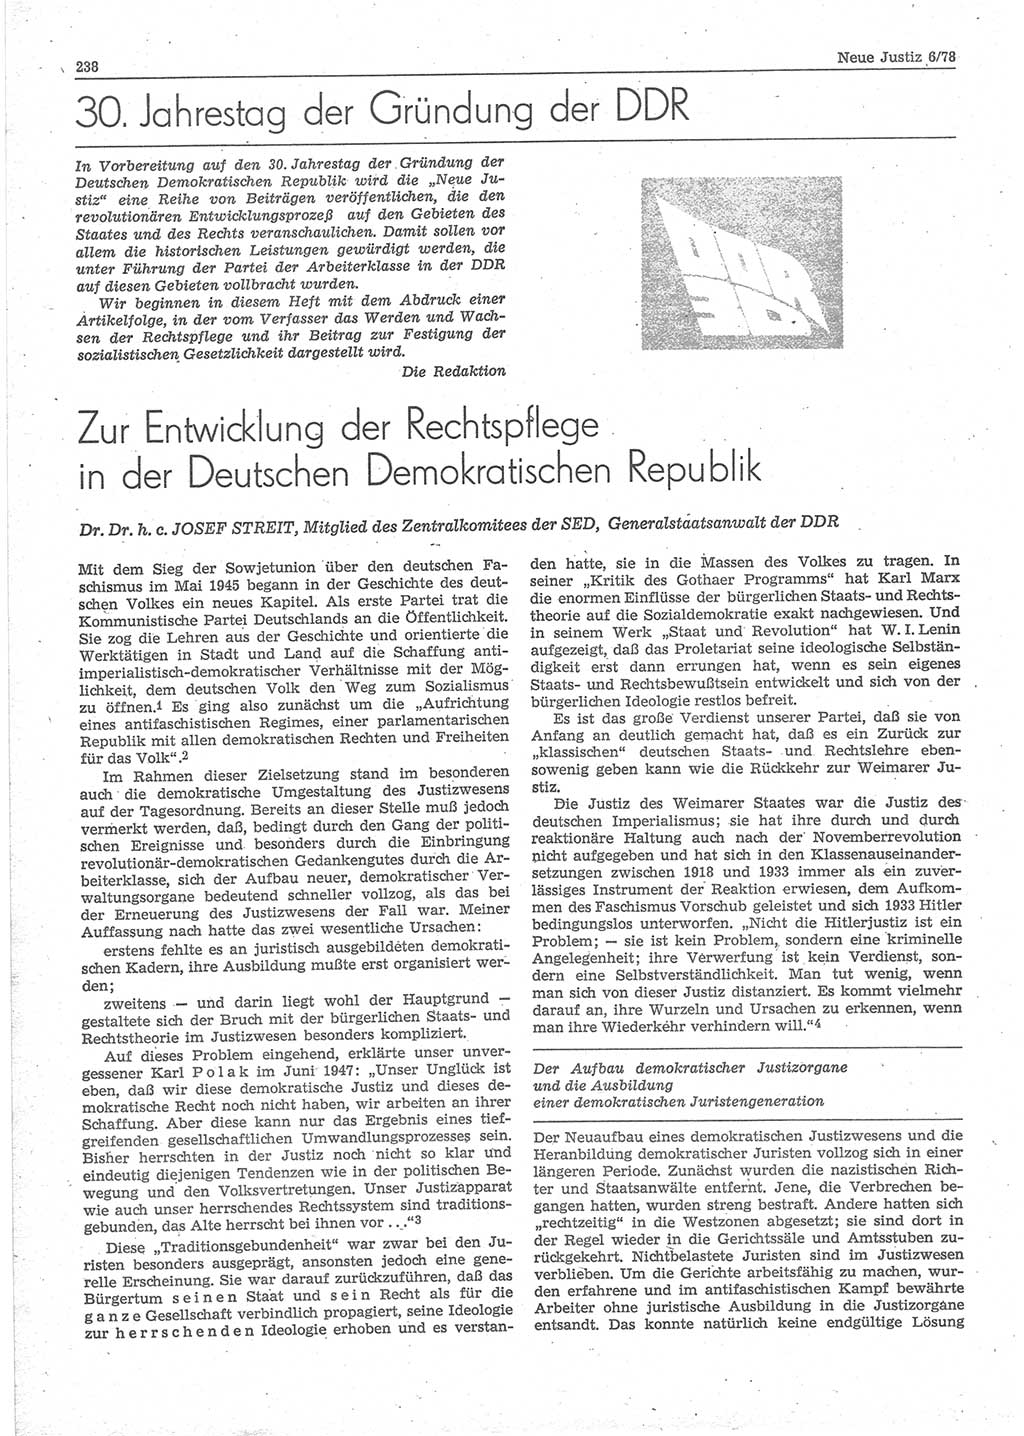 Neue Justiz (NJ), Zeitschrift für sozialistisches Recht und Gesetzlichkeit [Deutsche Demokratische Republik (DDR)], 32. Jahrgang 1978, Seite 238 (NJ DDR 1978, S. 238)